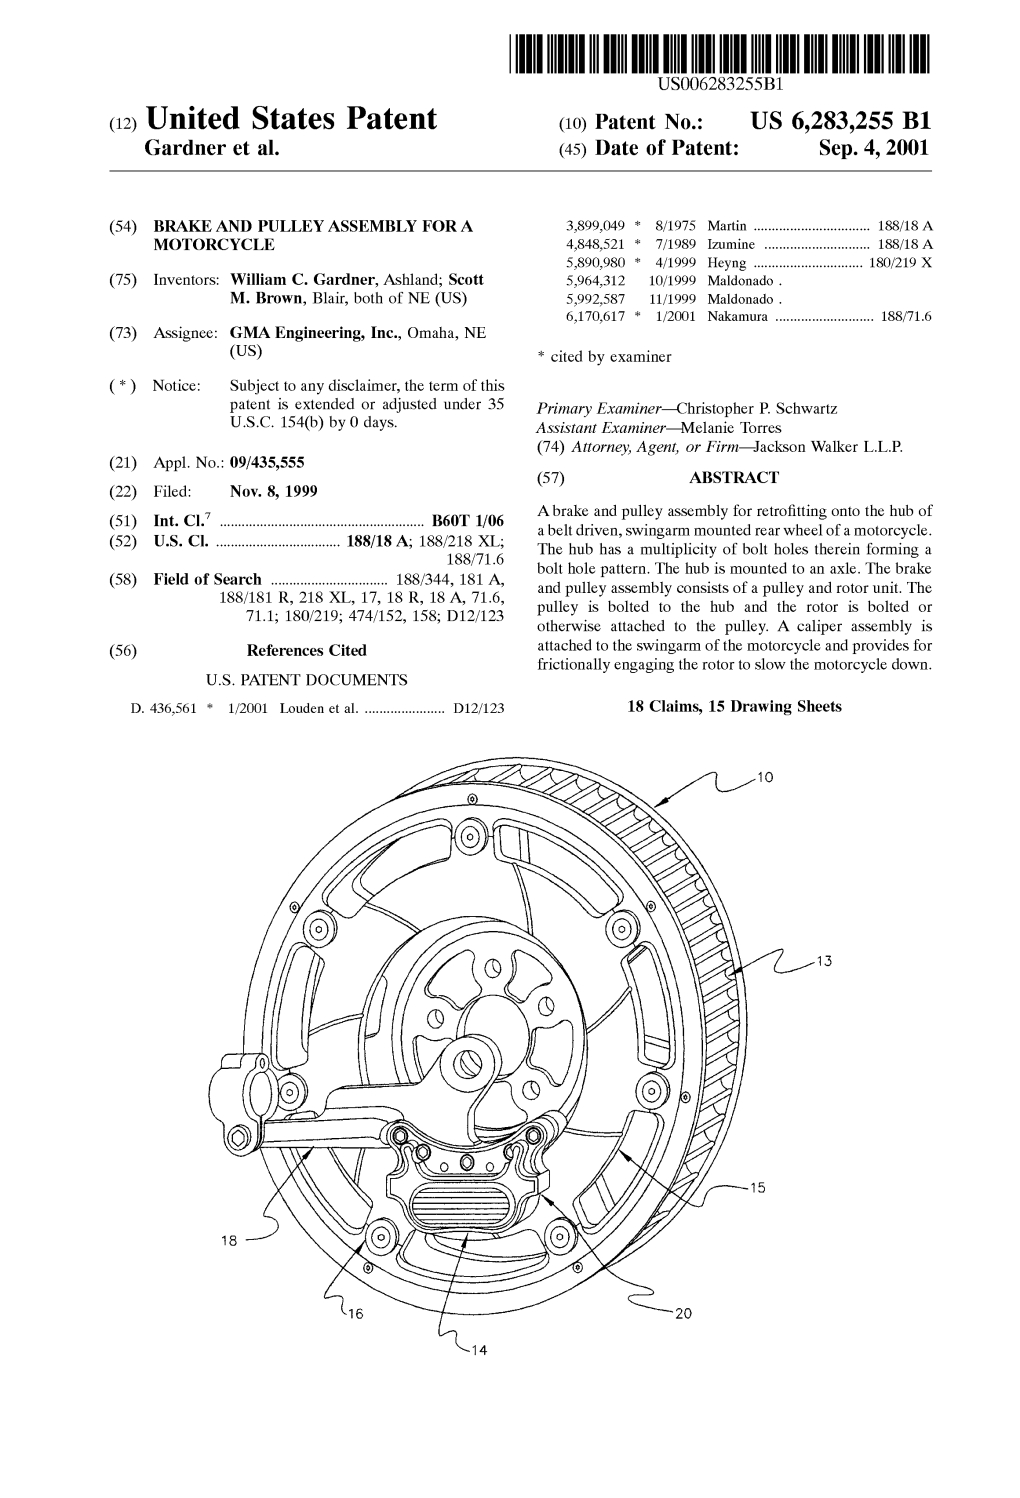 (12) United States Patent (10) Patent No.: US 6,283,255 B1 Gardner Et Al